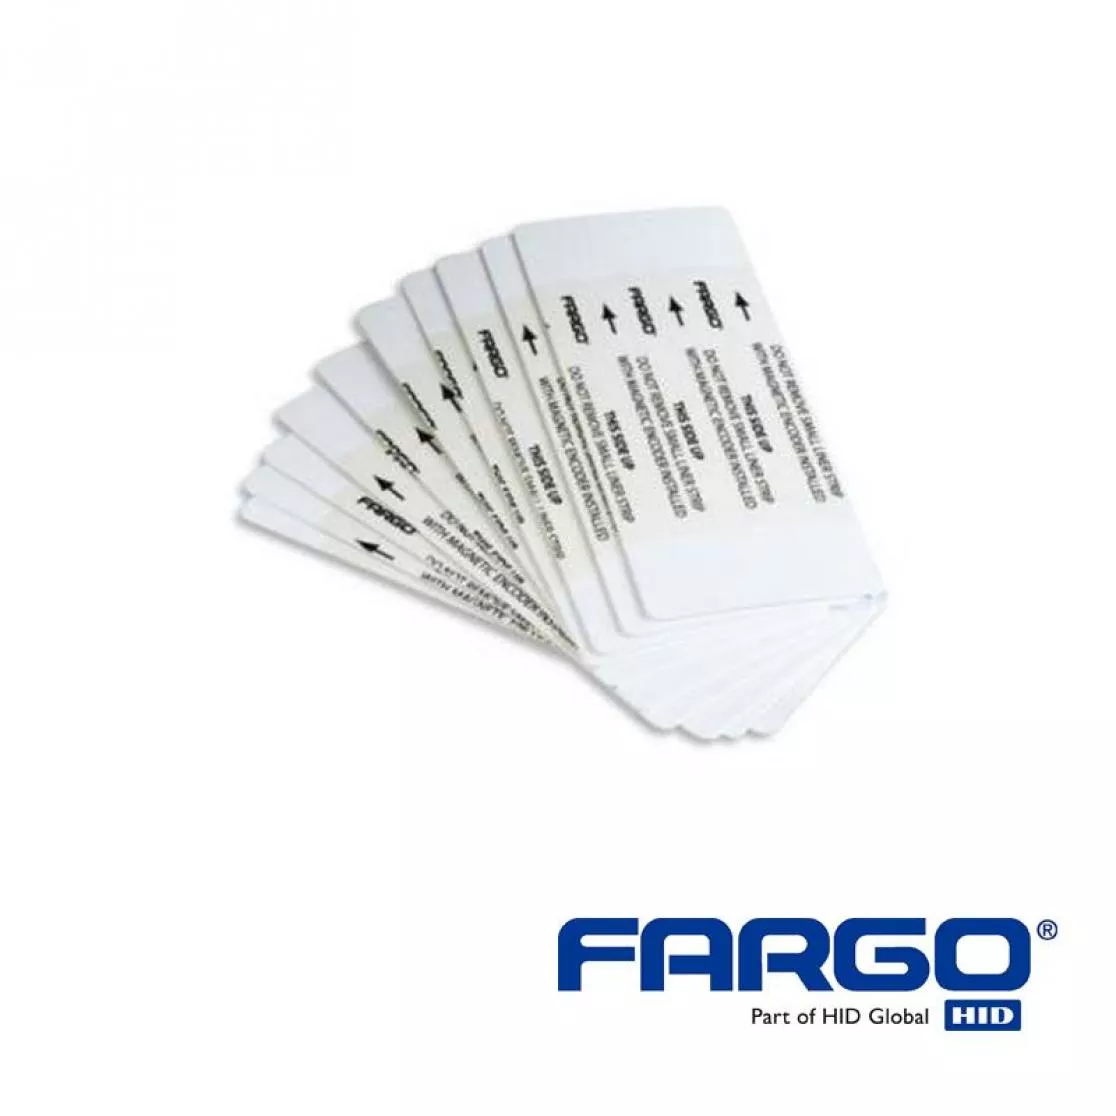 Reinigungskarten beidseitig für HID Fargo HDP5000 Kartendrucker